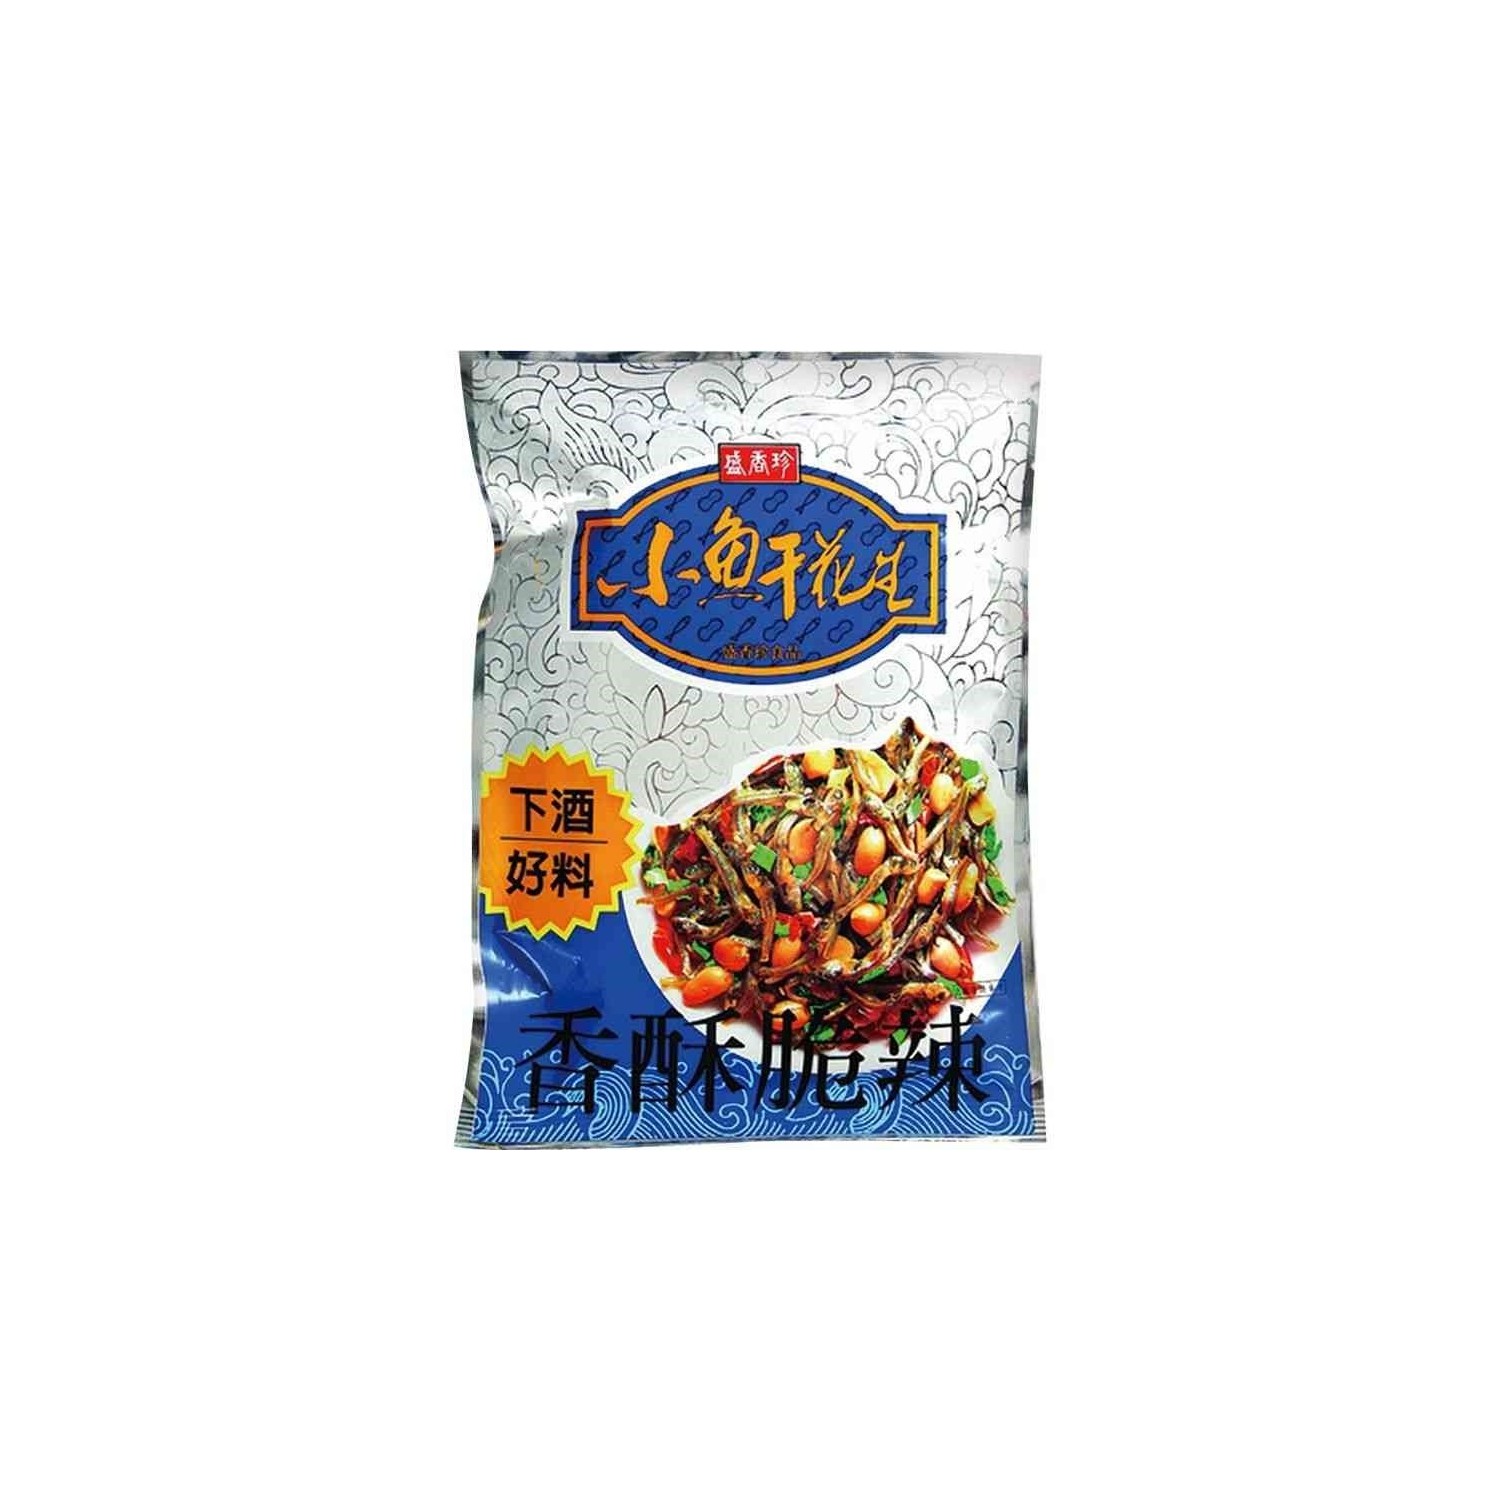 Triko Food 80g Dried Fish With Peanuts (盛香珍 小魚乾花生) Fried Fish with Peanut